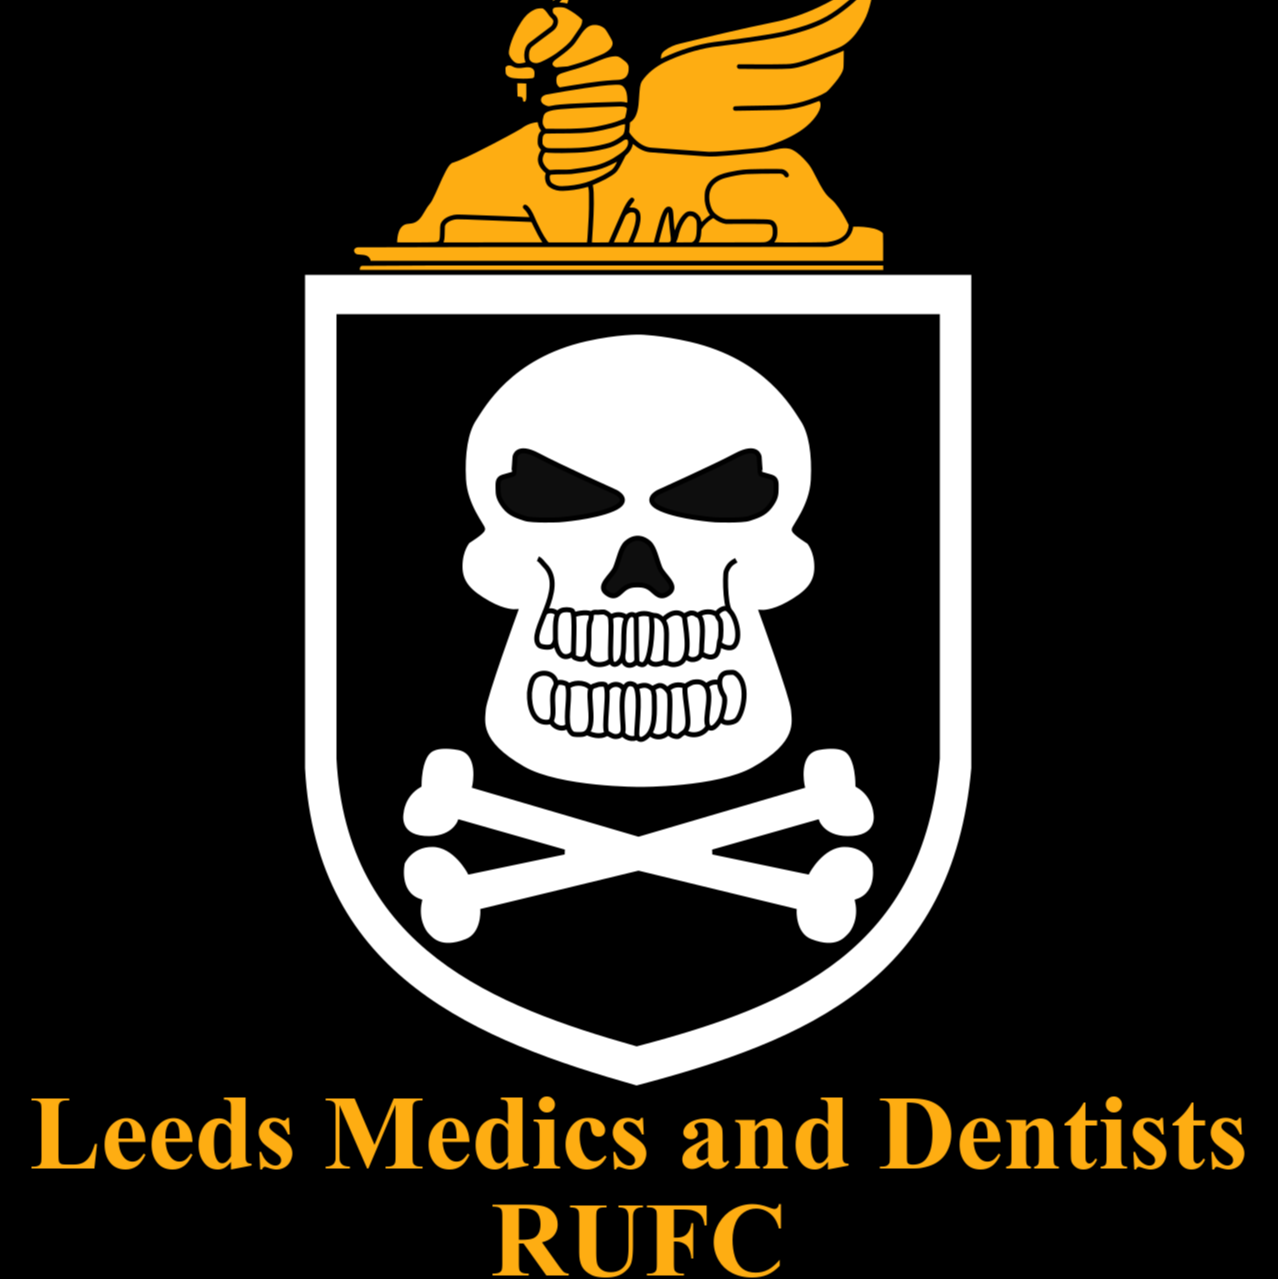 Leeds-Medics-Dentists-RUFC-logo.png